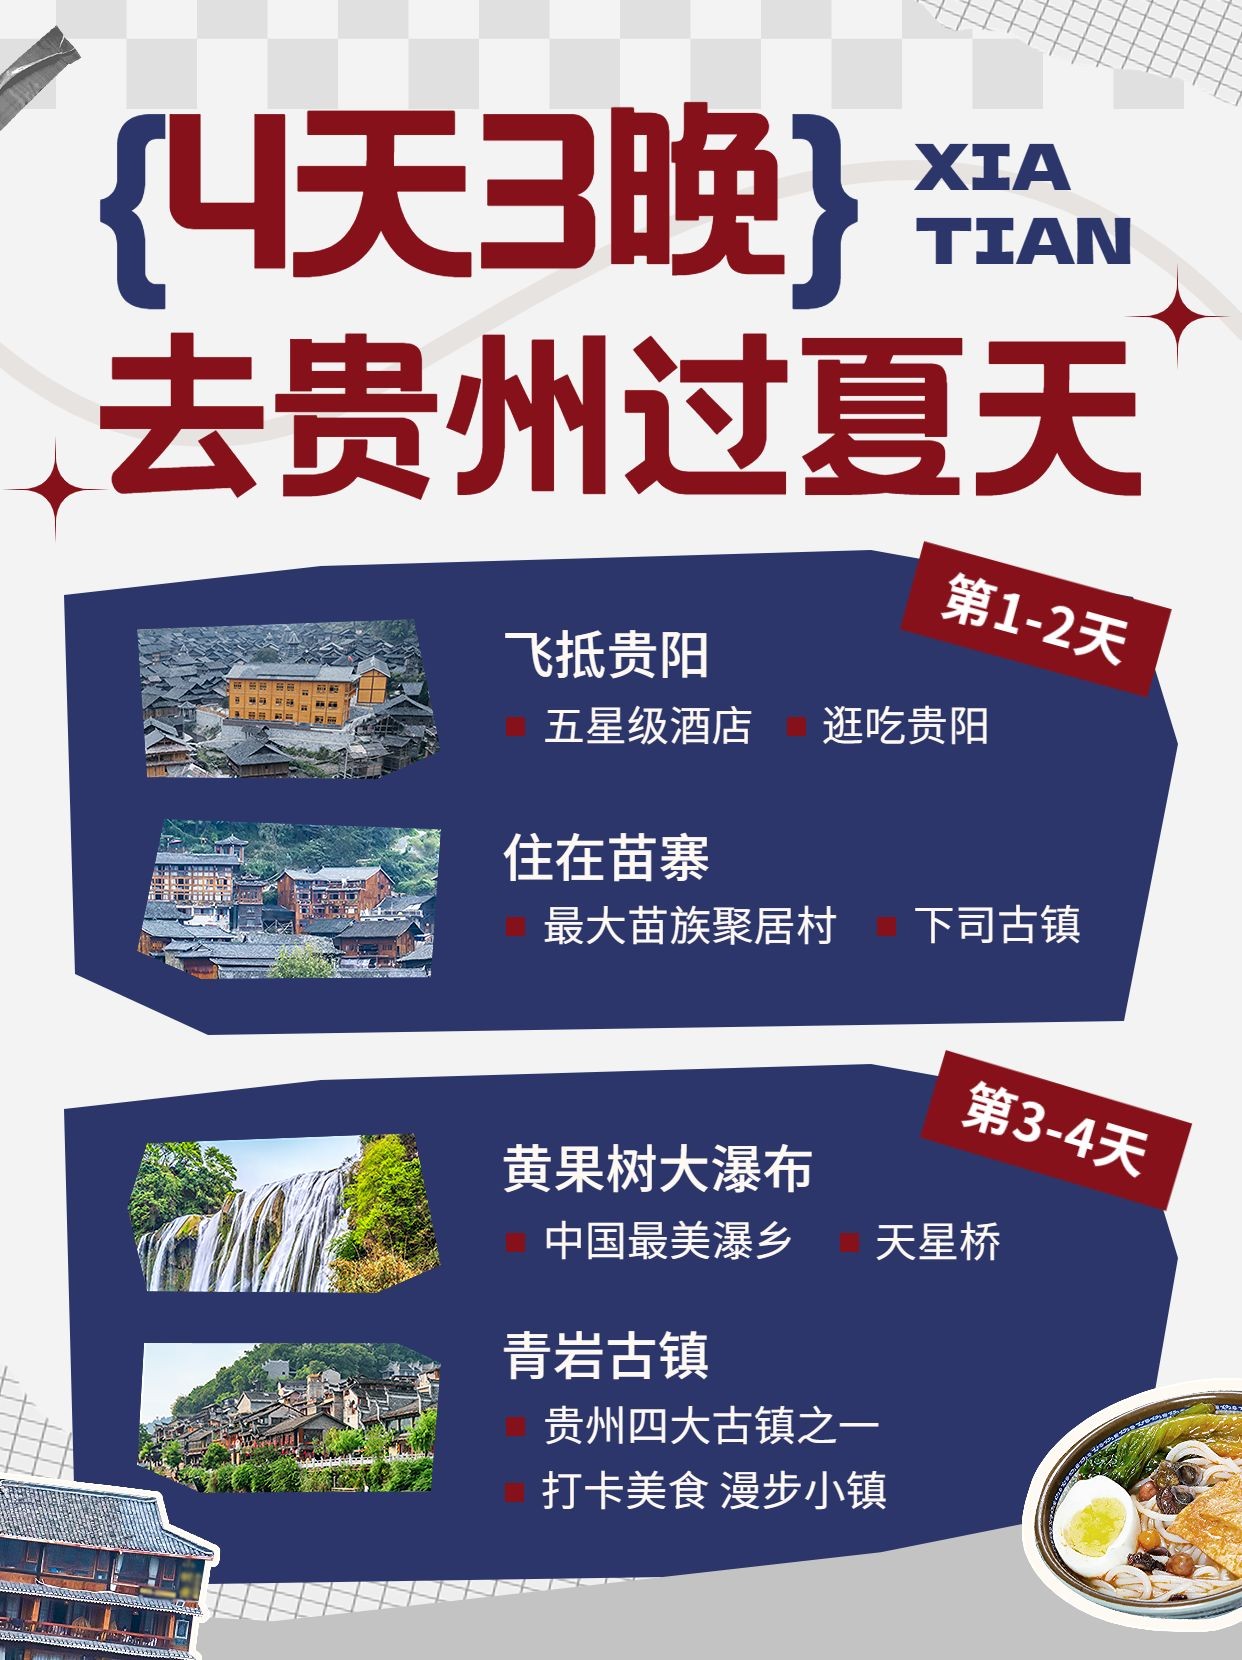 旅游出行贵州旅游线路营销小红书配图